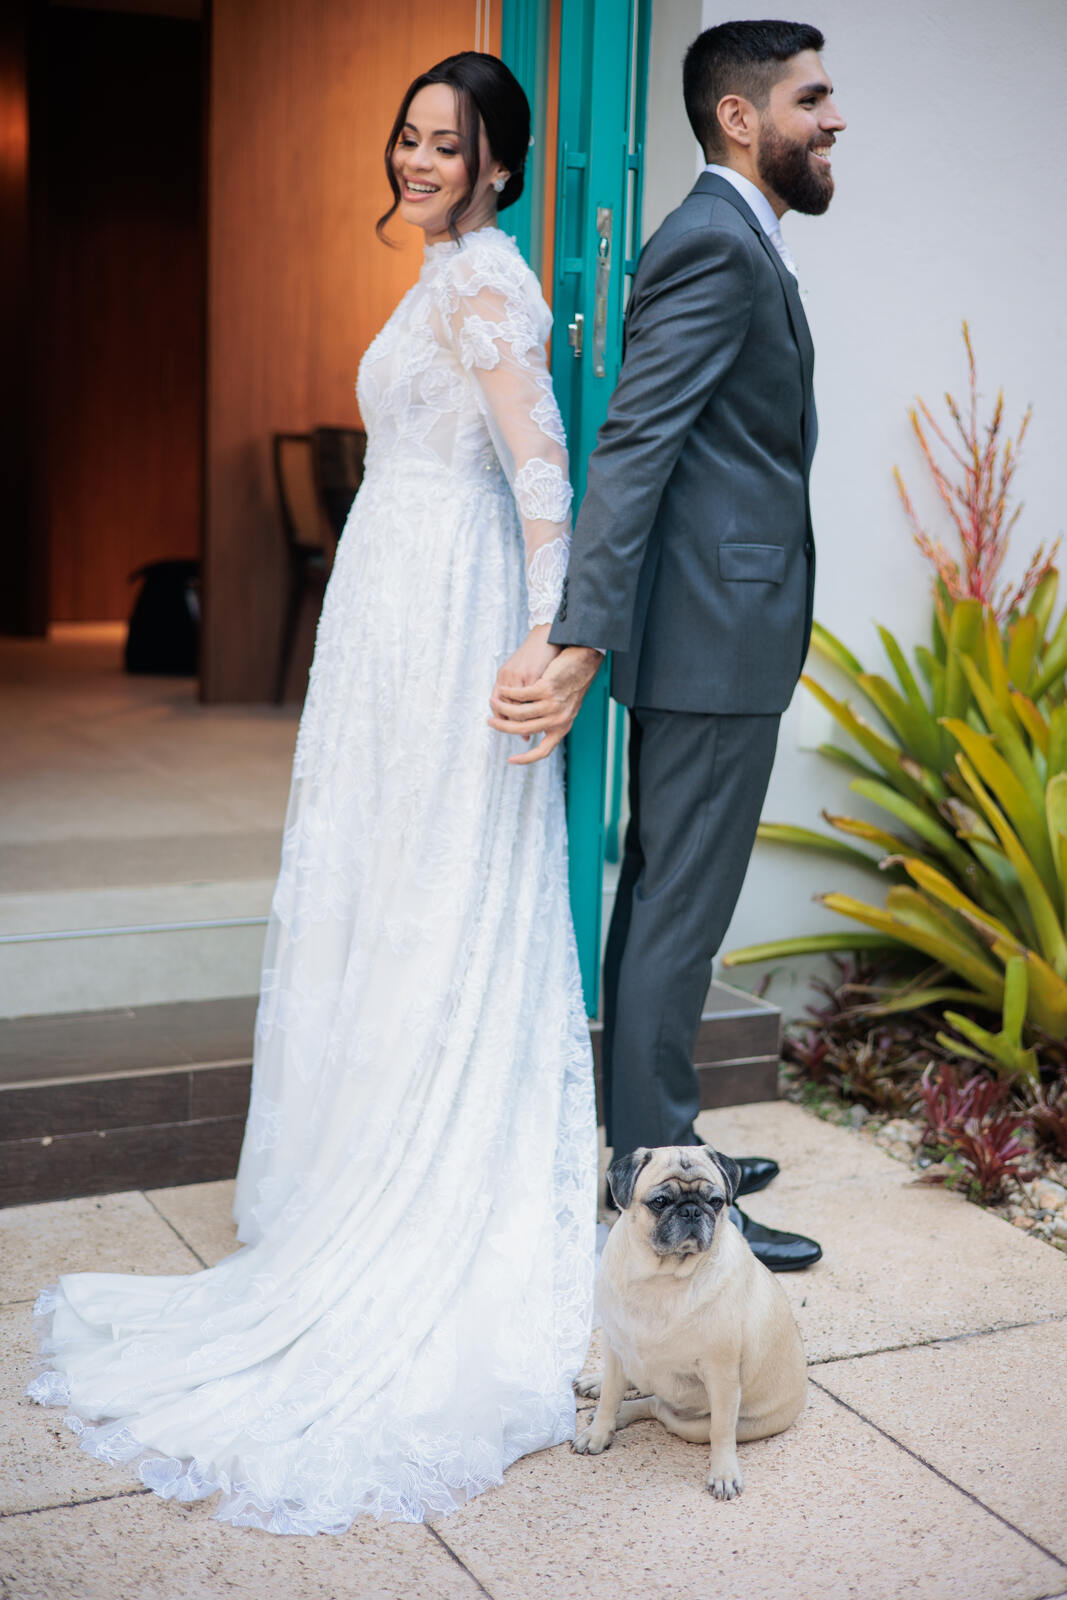 mulher com vestido de noiva com manga longa bordado e cabelo preso de costas de mãos dadas com noivo com terno cinza